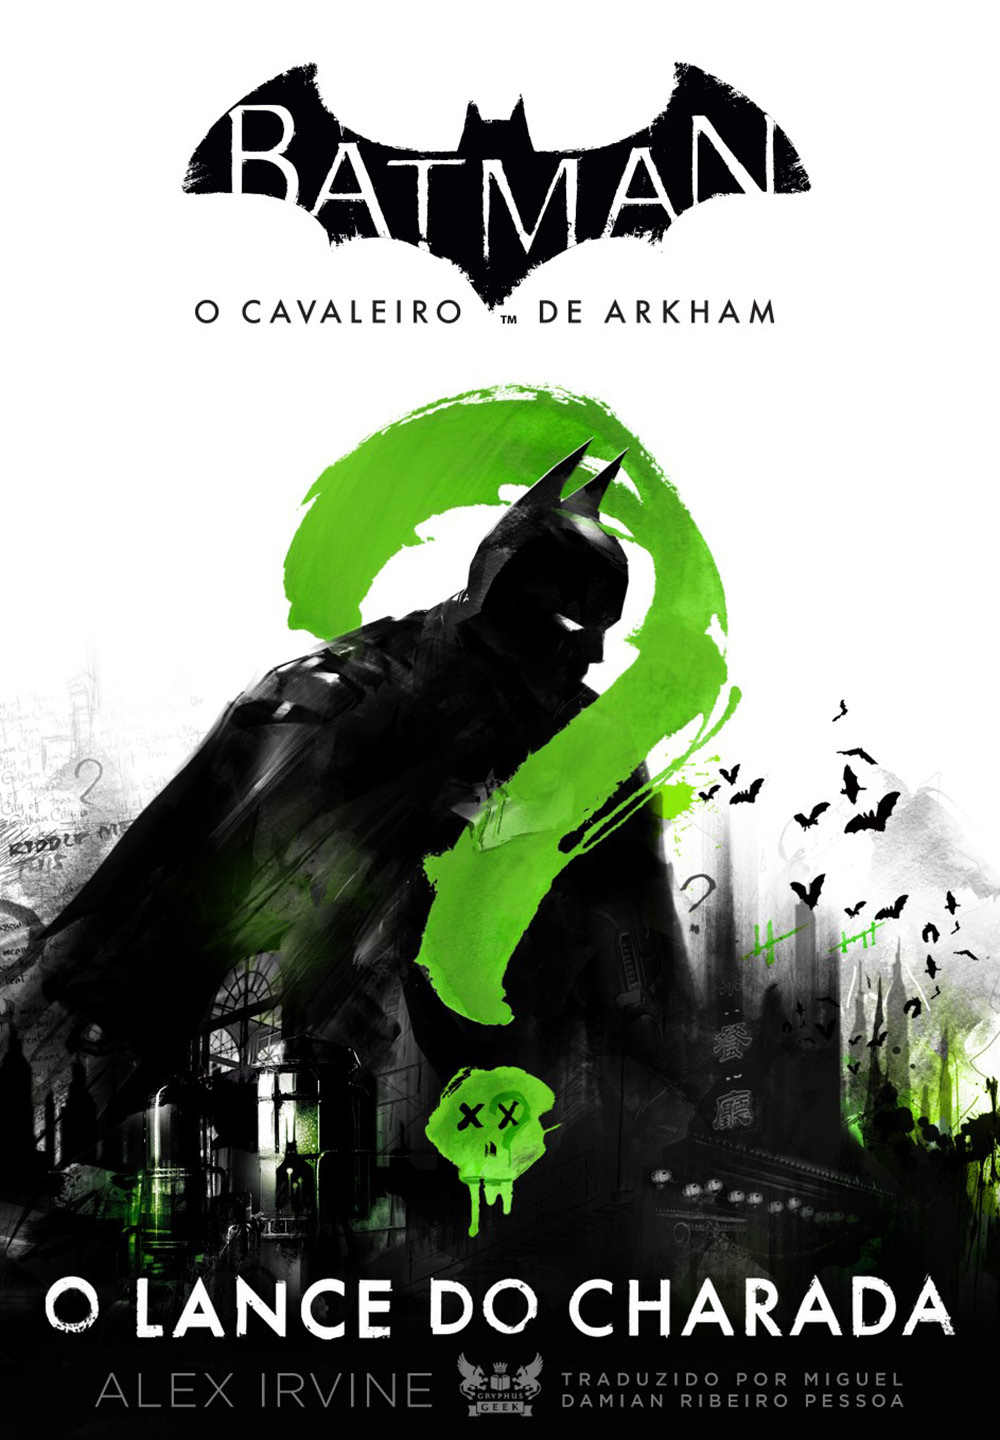 Tradução para Batman: Arkham Asylum Download